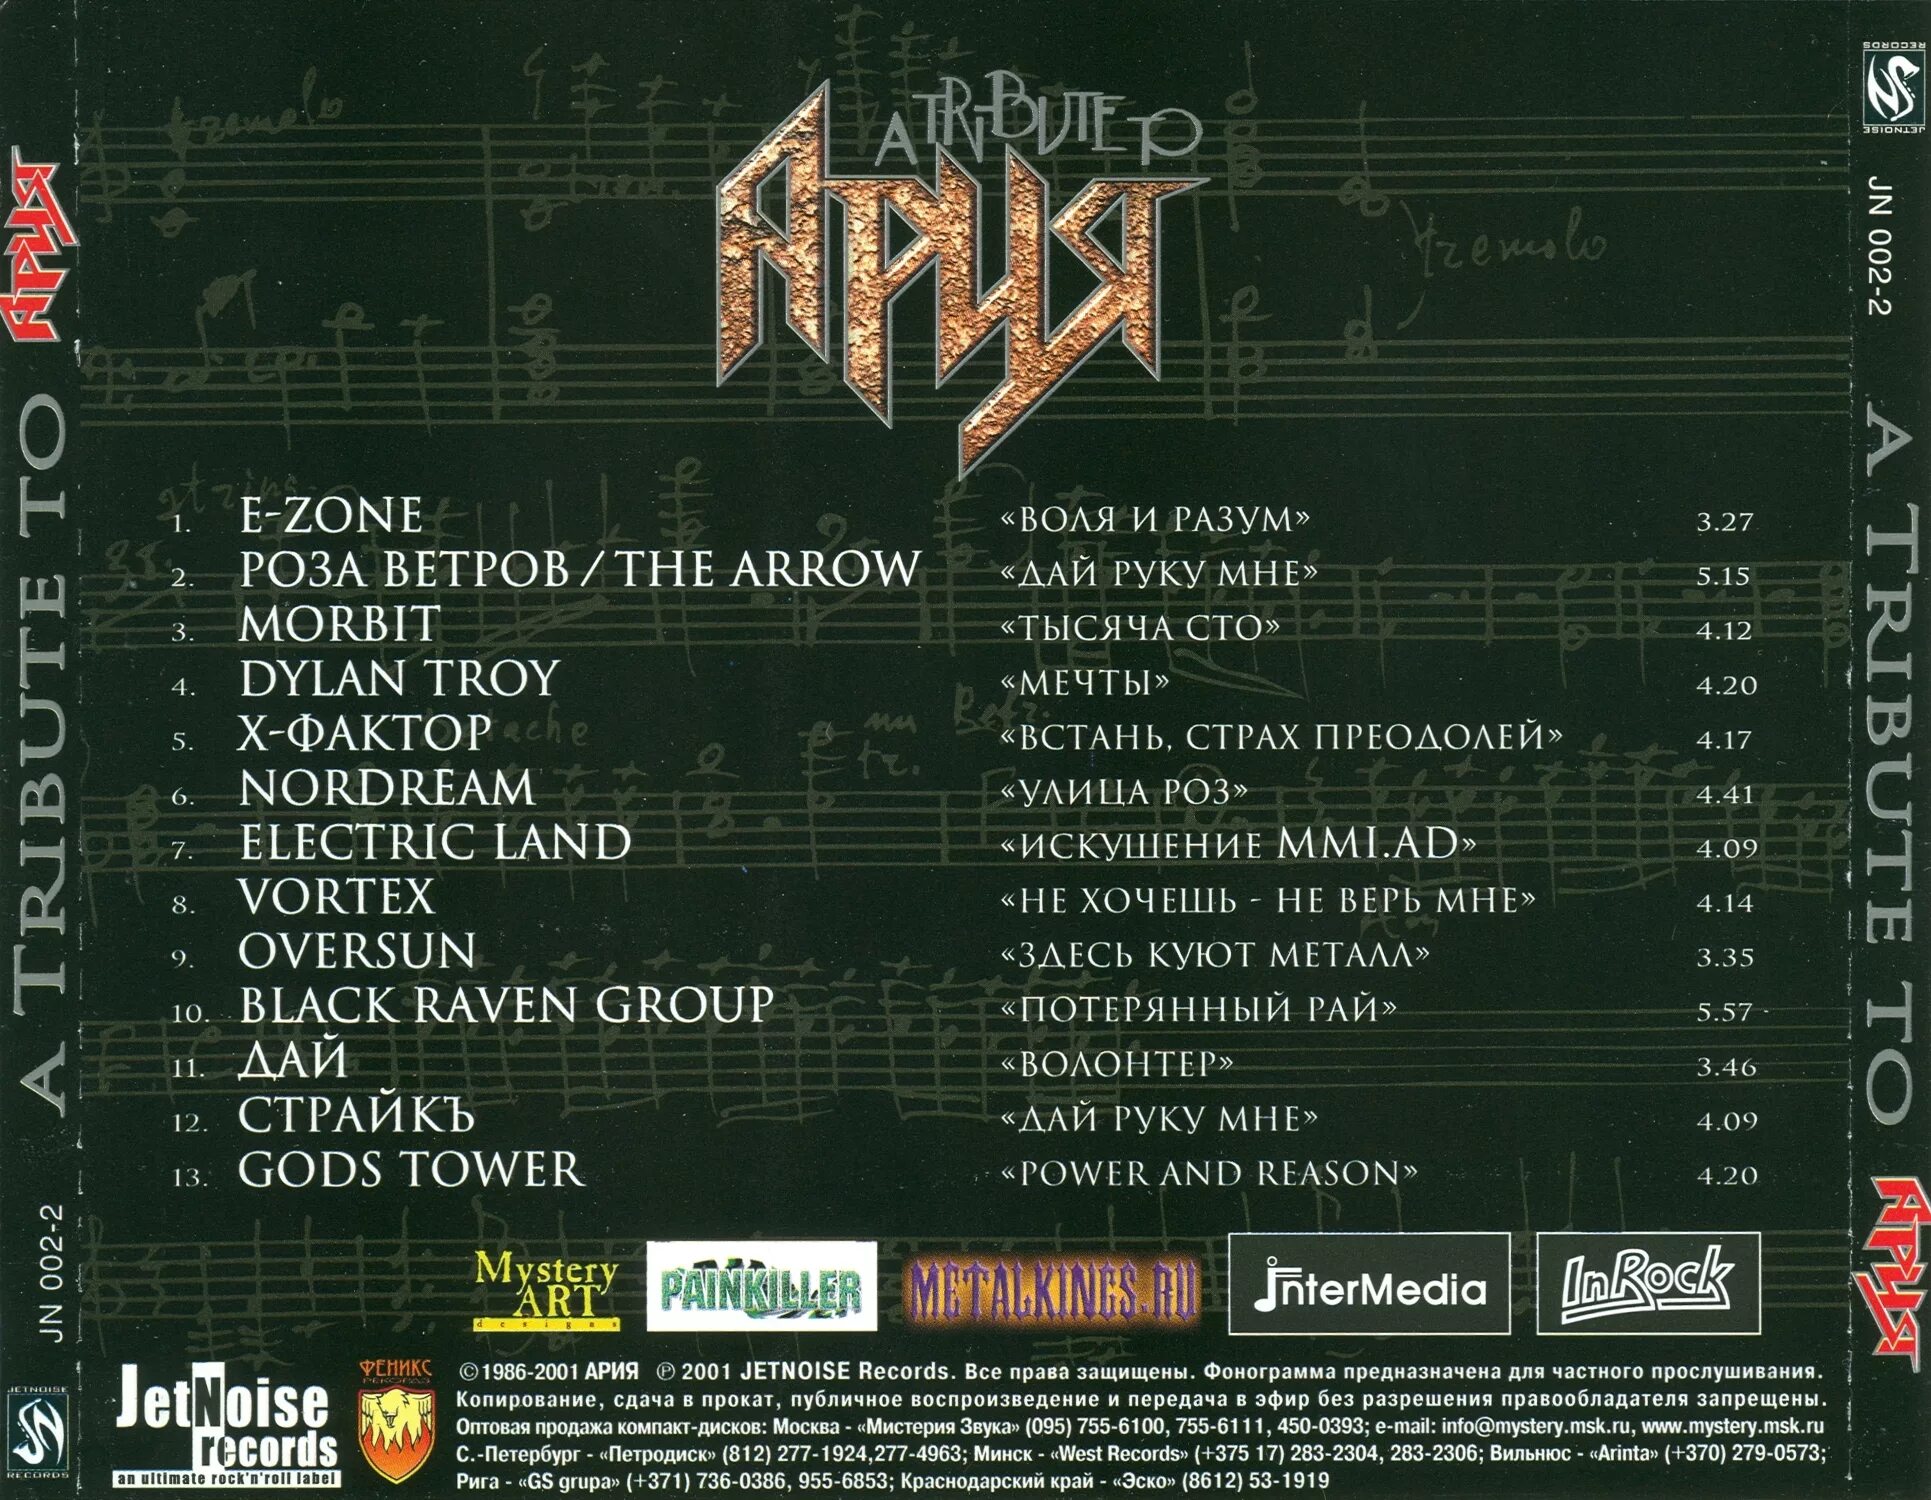 Ария мр3. Ария Tribute to 2001. A Tribute to Ария. Трибьют-альбом трибьют-альбомы. Хронология группы Ария.